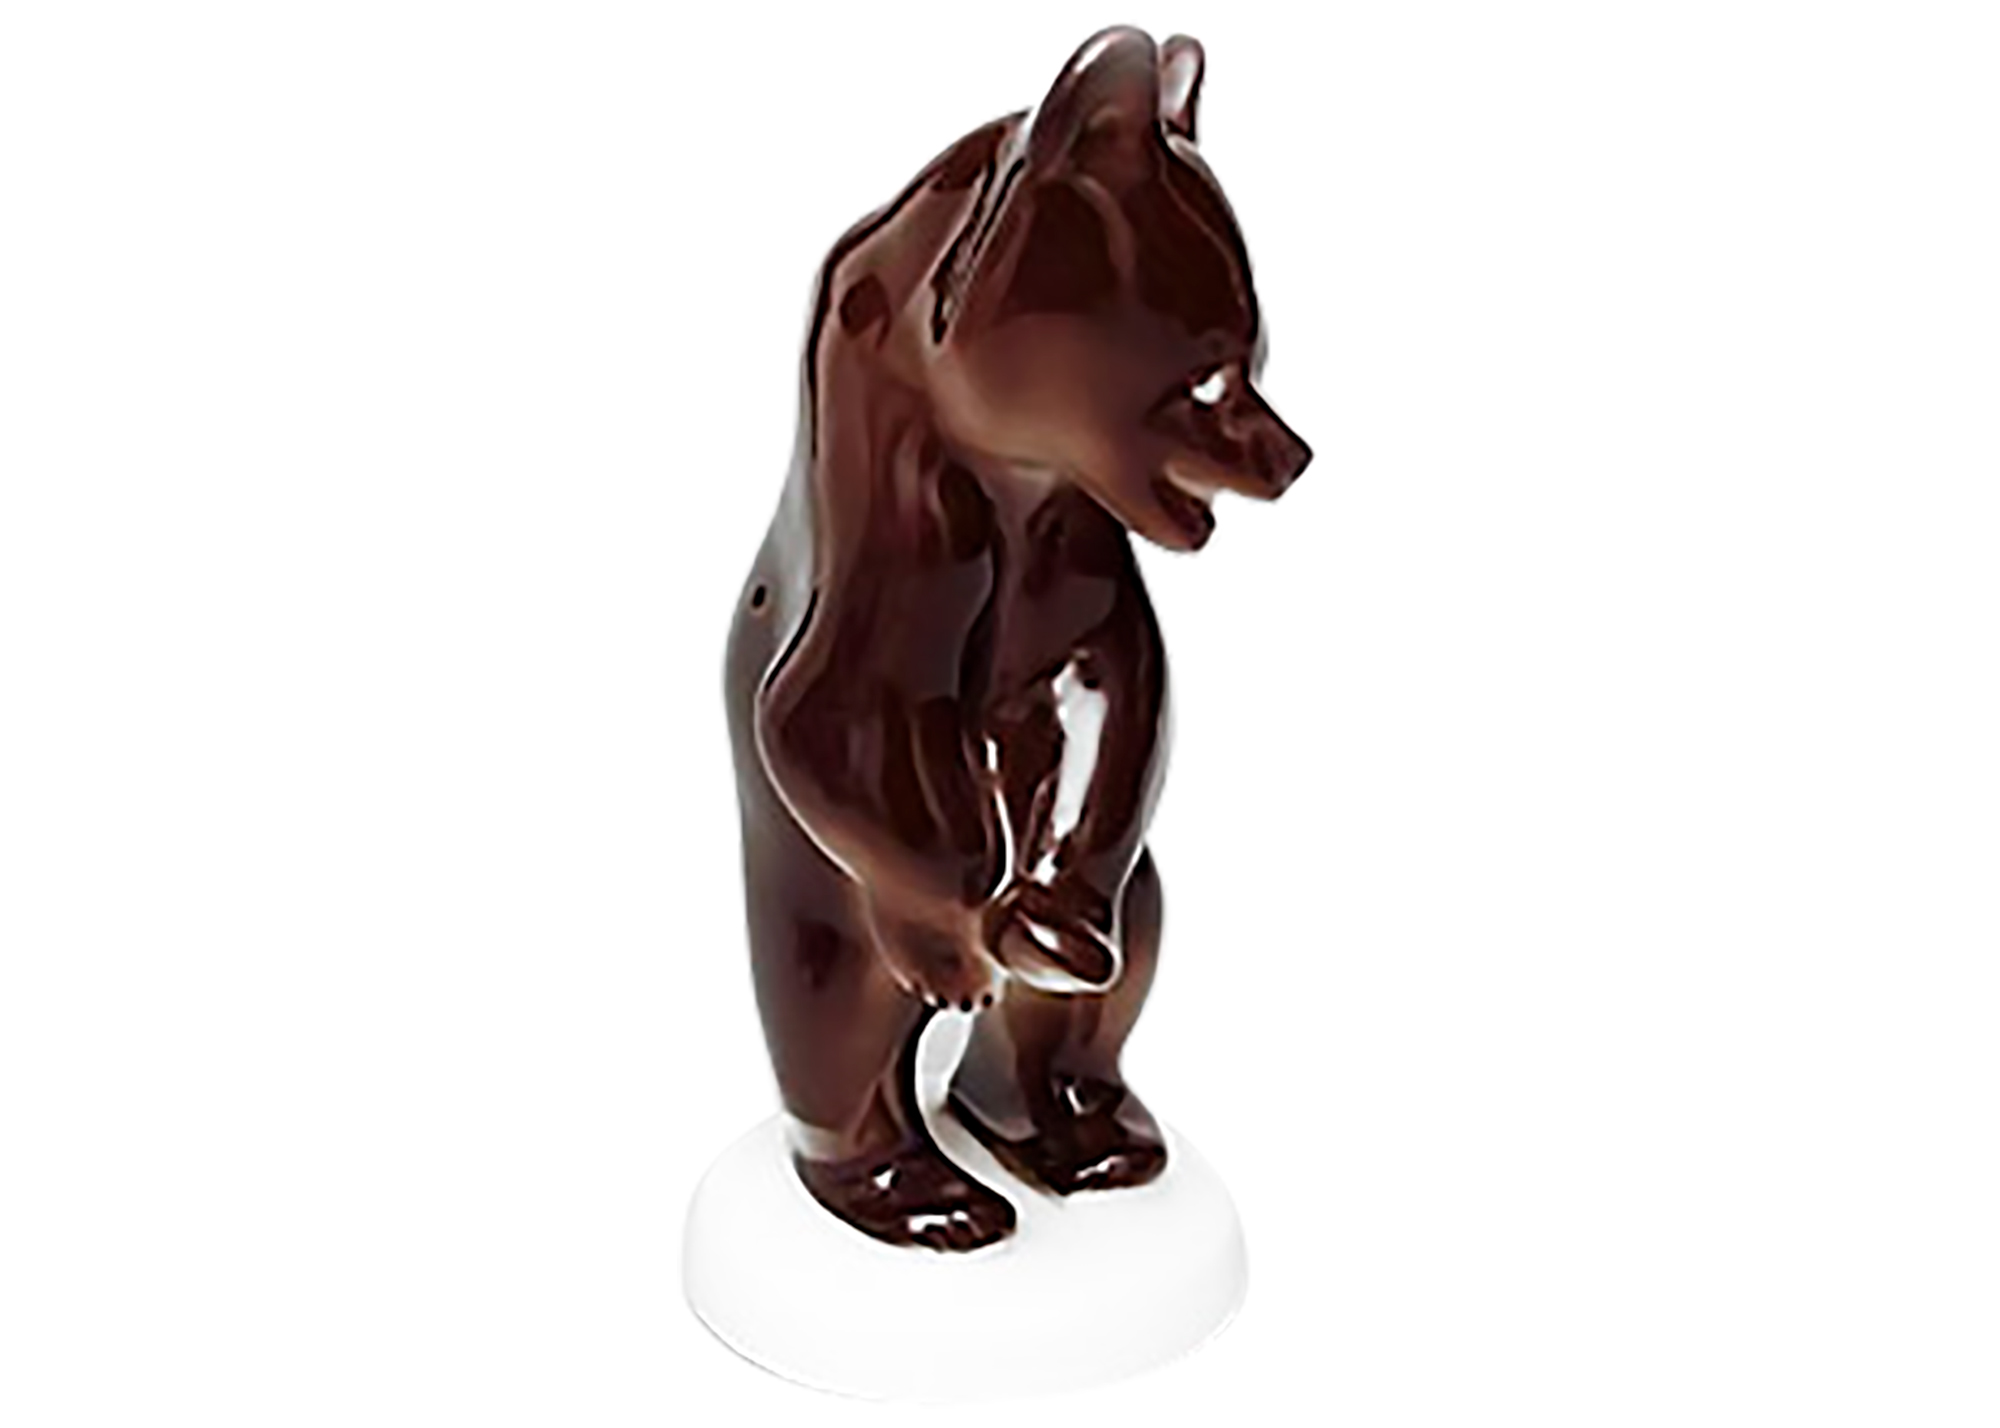 Buy Фарфоровая фигурка «Стоящий медведь» at GoldenCockerel.com